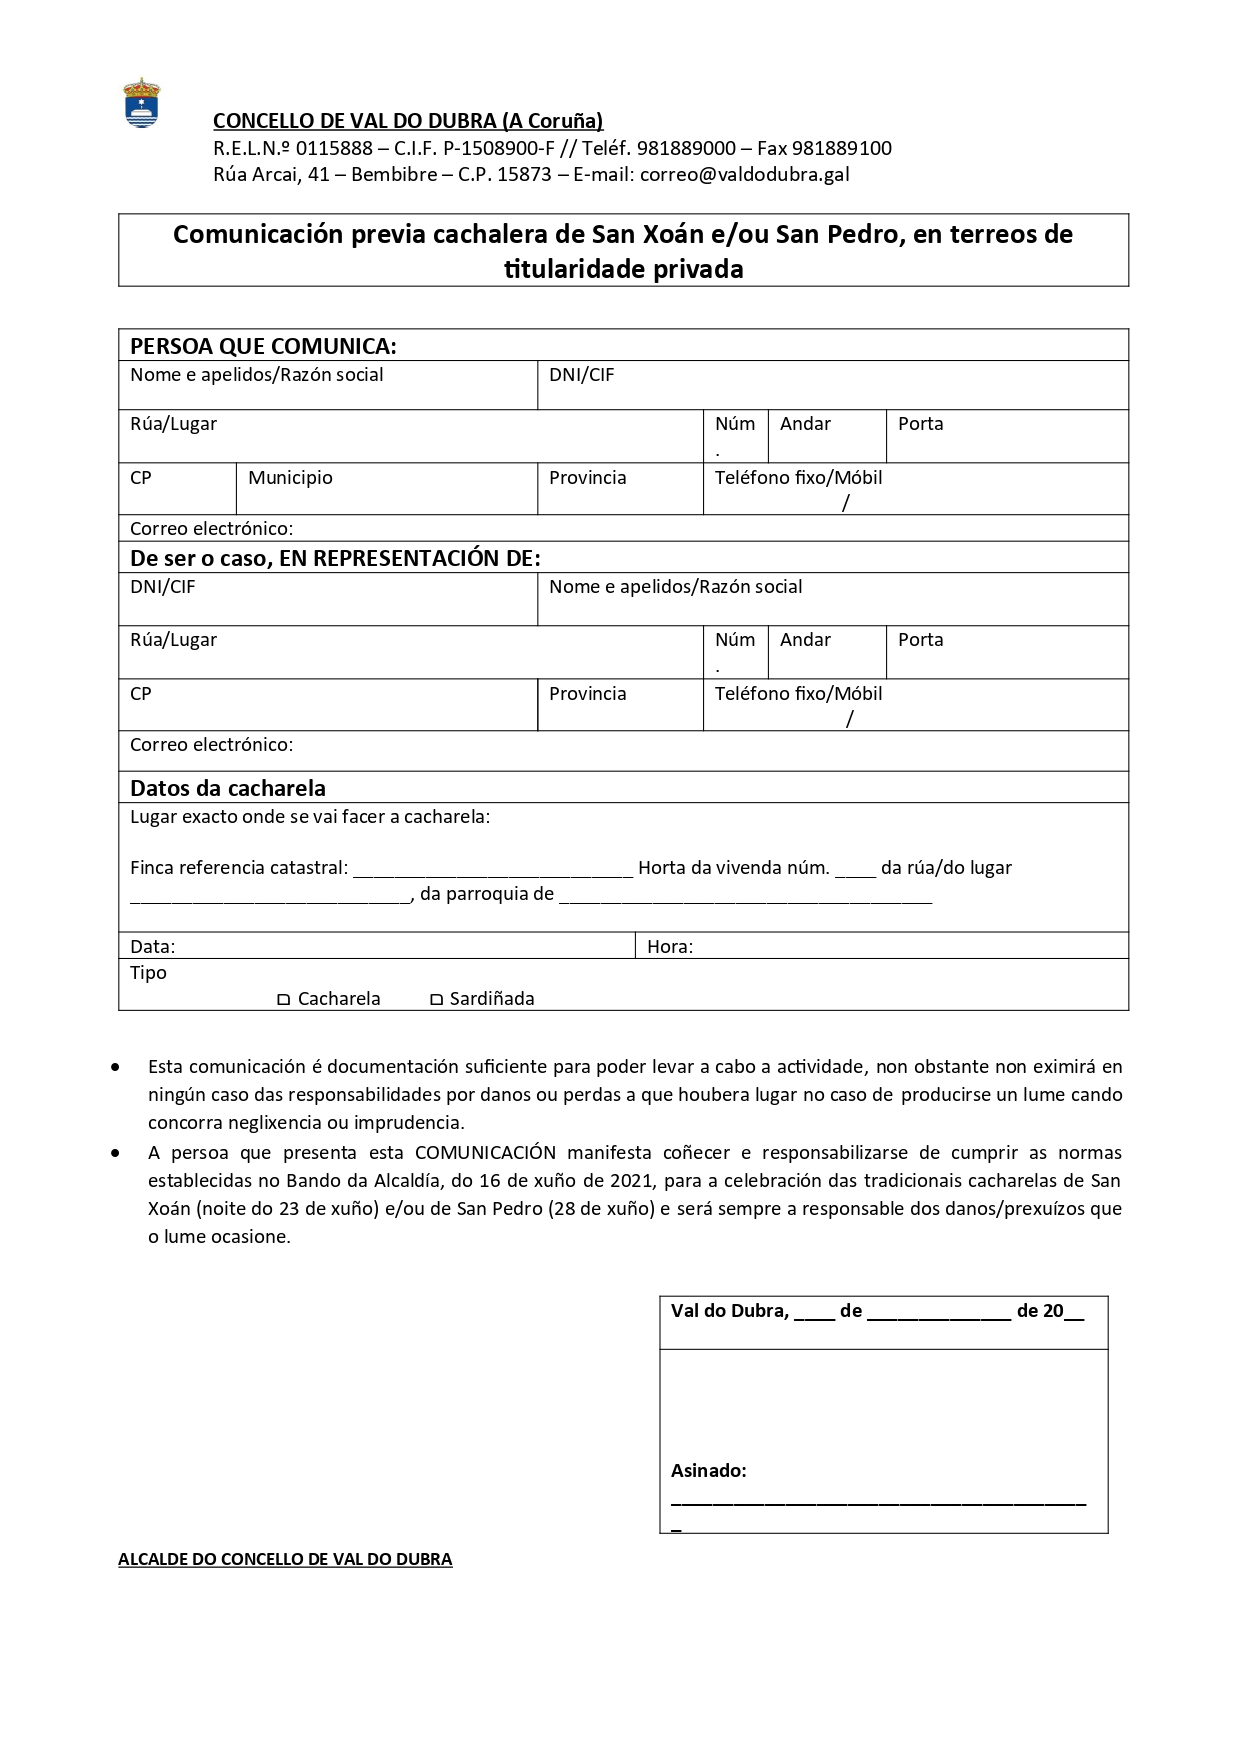 Comunicación previa cachalera de San Xoán en terreos privados 2021_page-0001